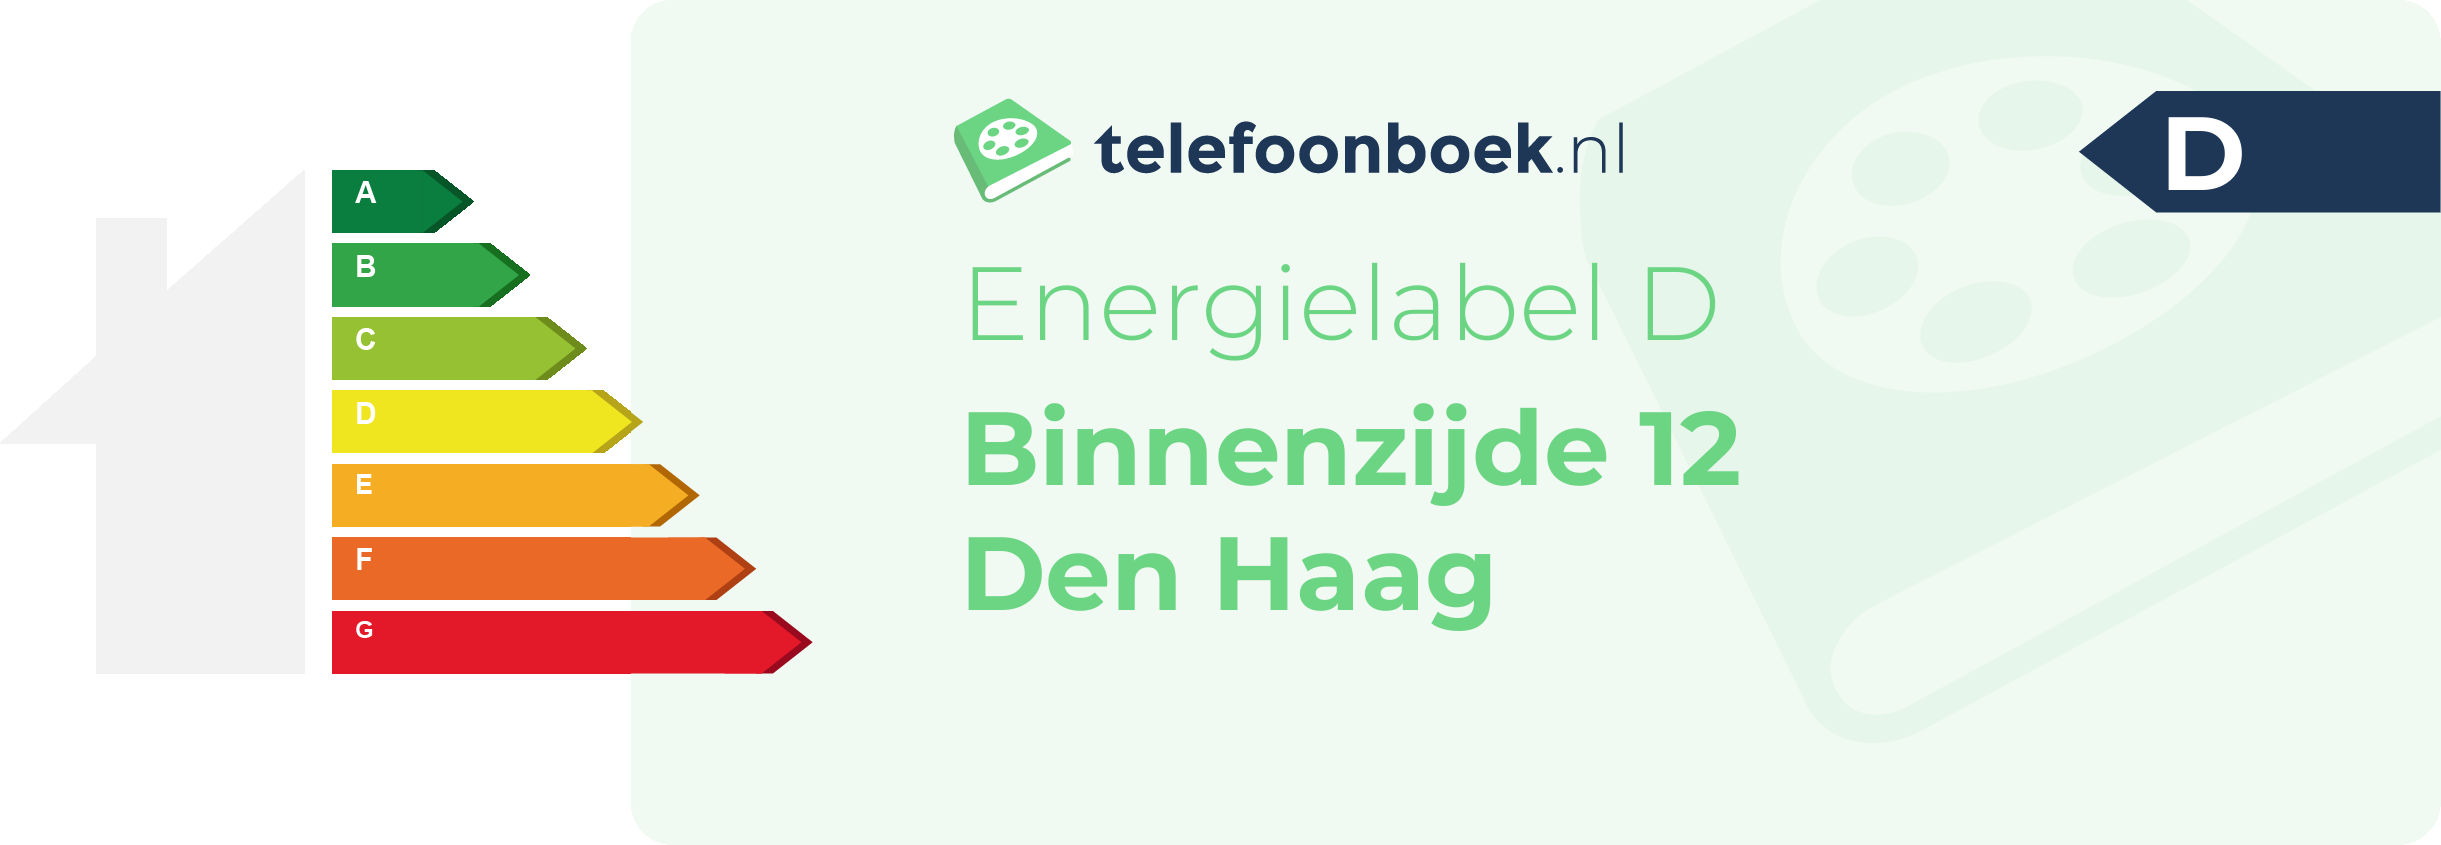 Energielabel Binnenzijde 12 Den Haag